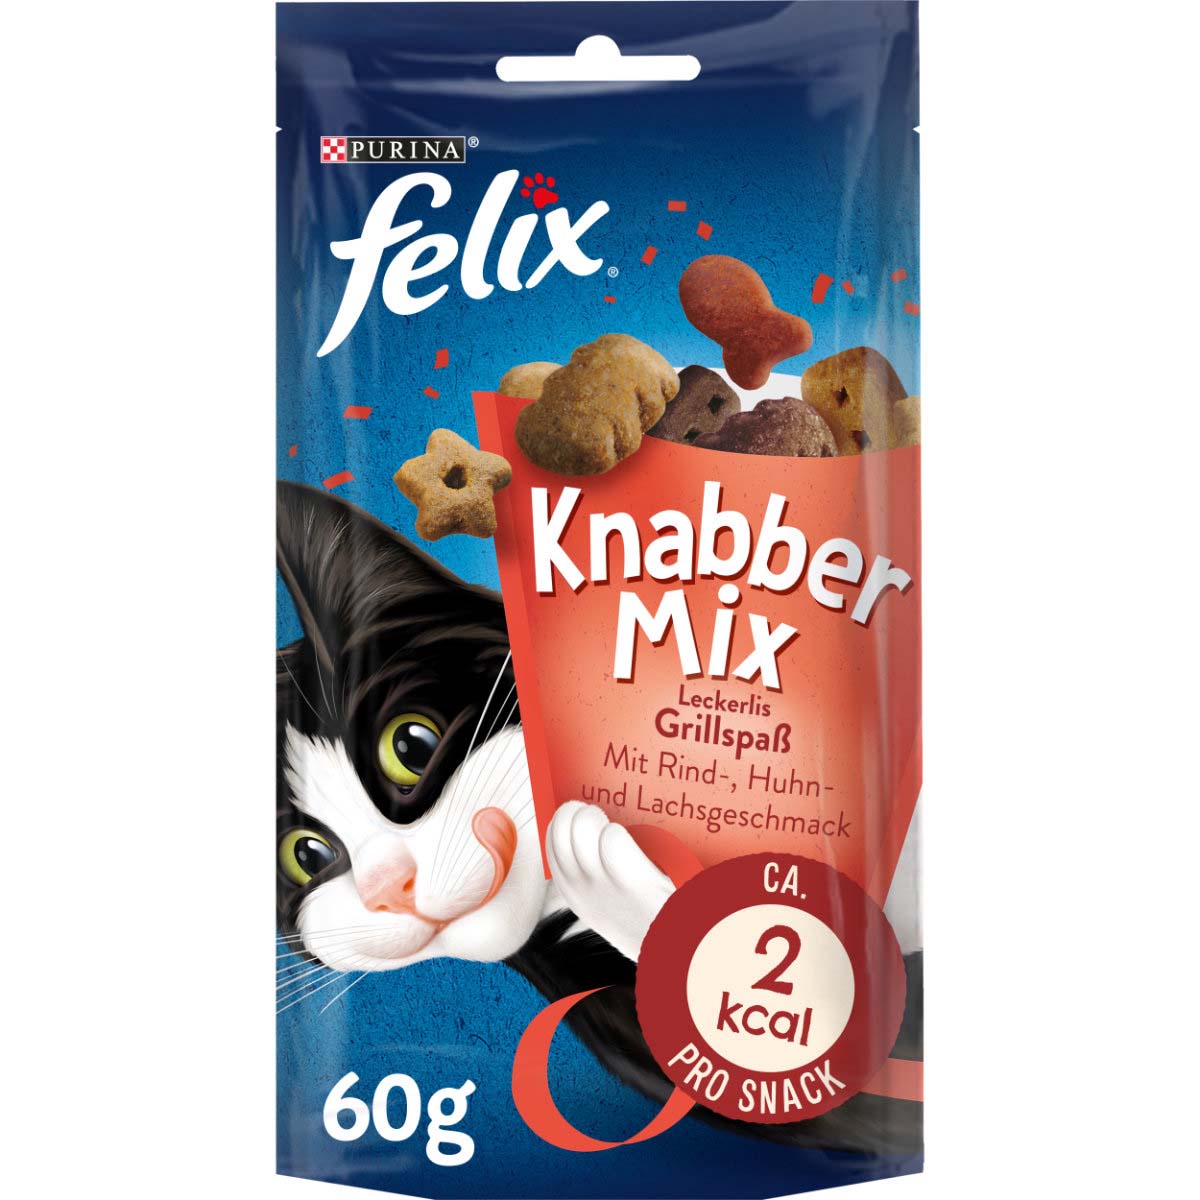 FELIX KnabberMix Grillspaß Katzensnack bunter Mix 8x60g